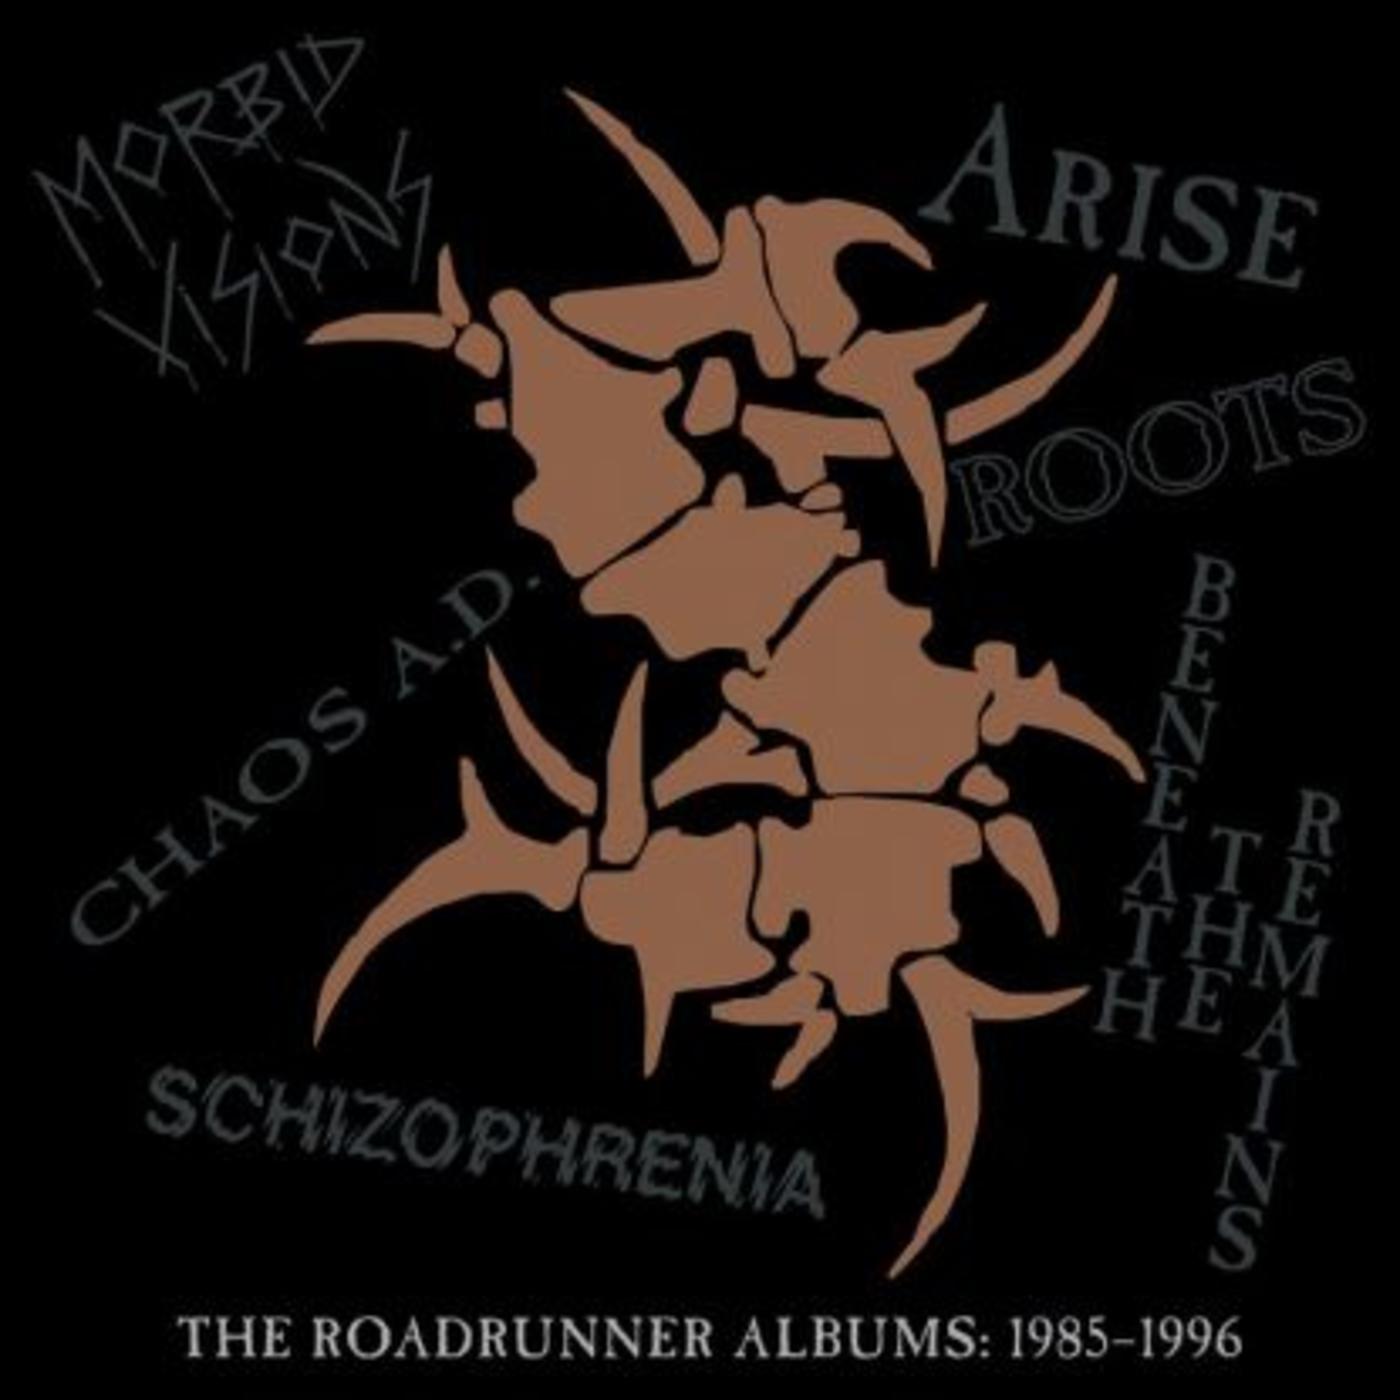 The Roadrunner Albums: 1985-1996